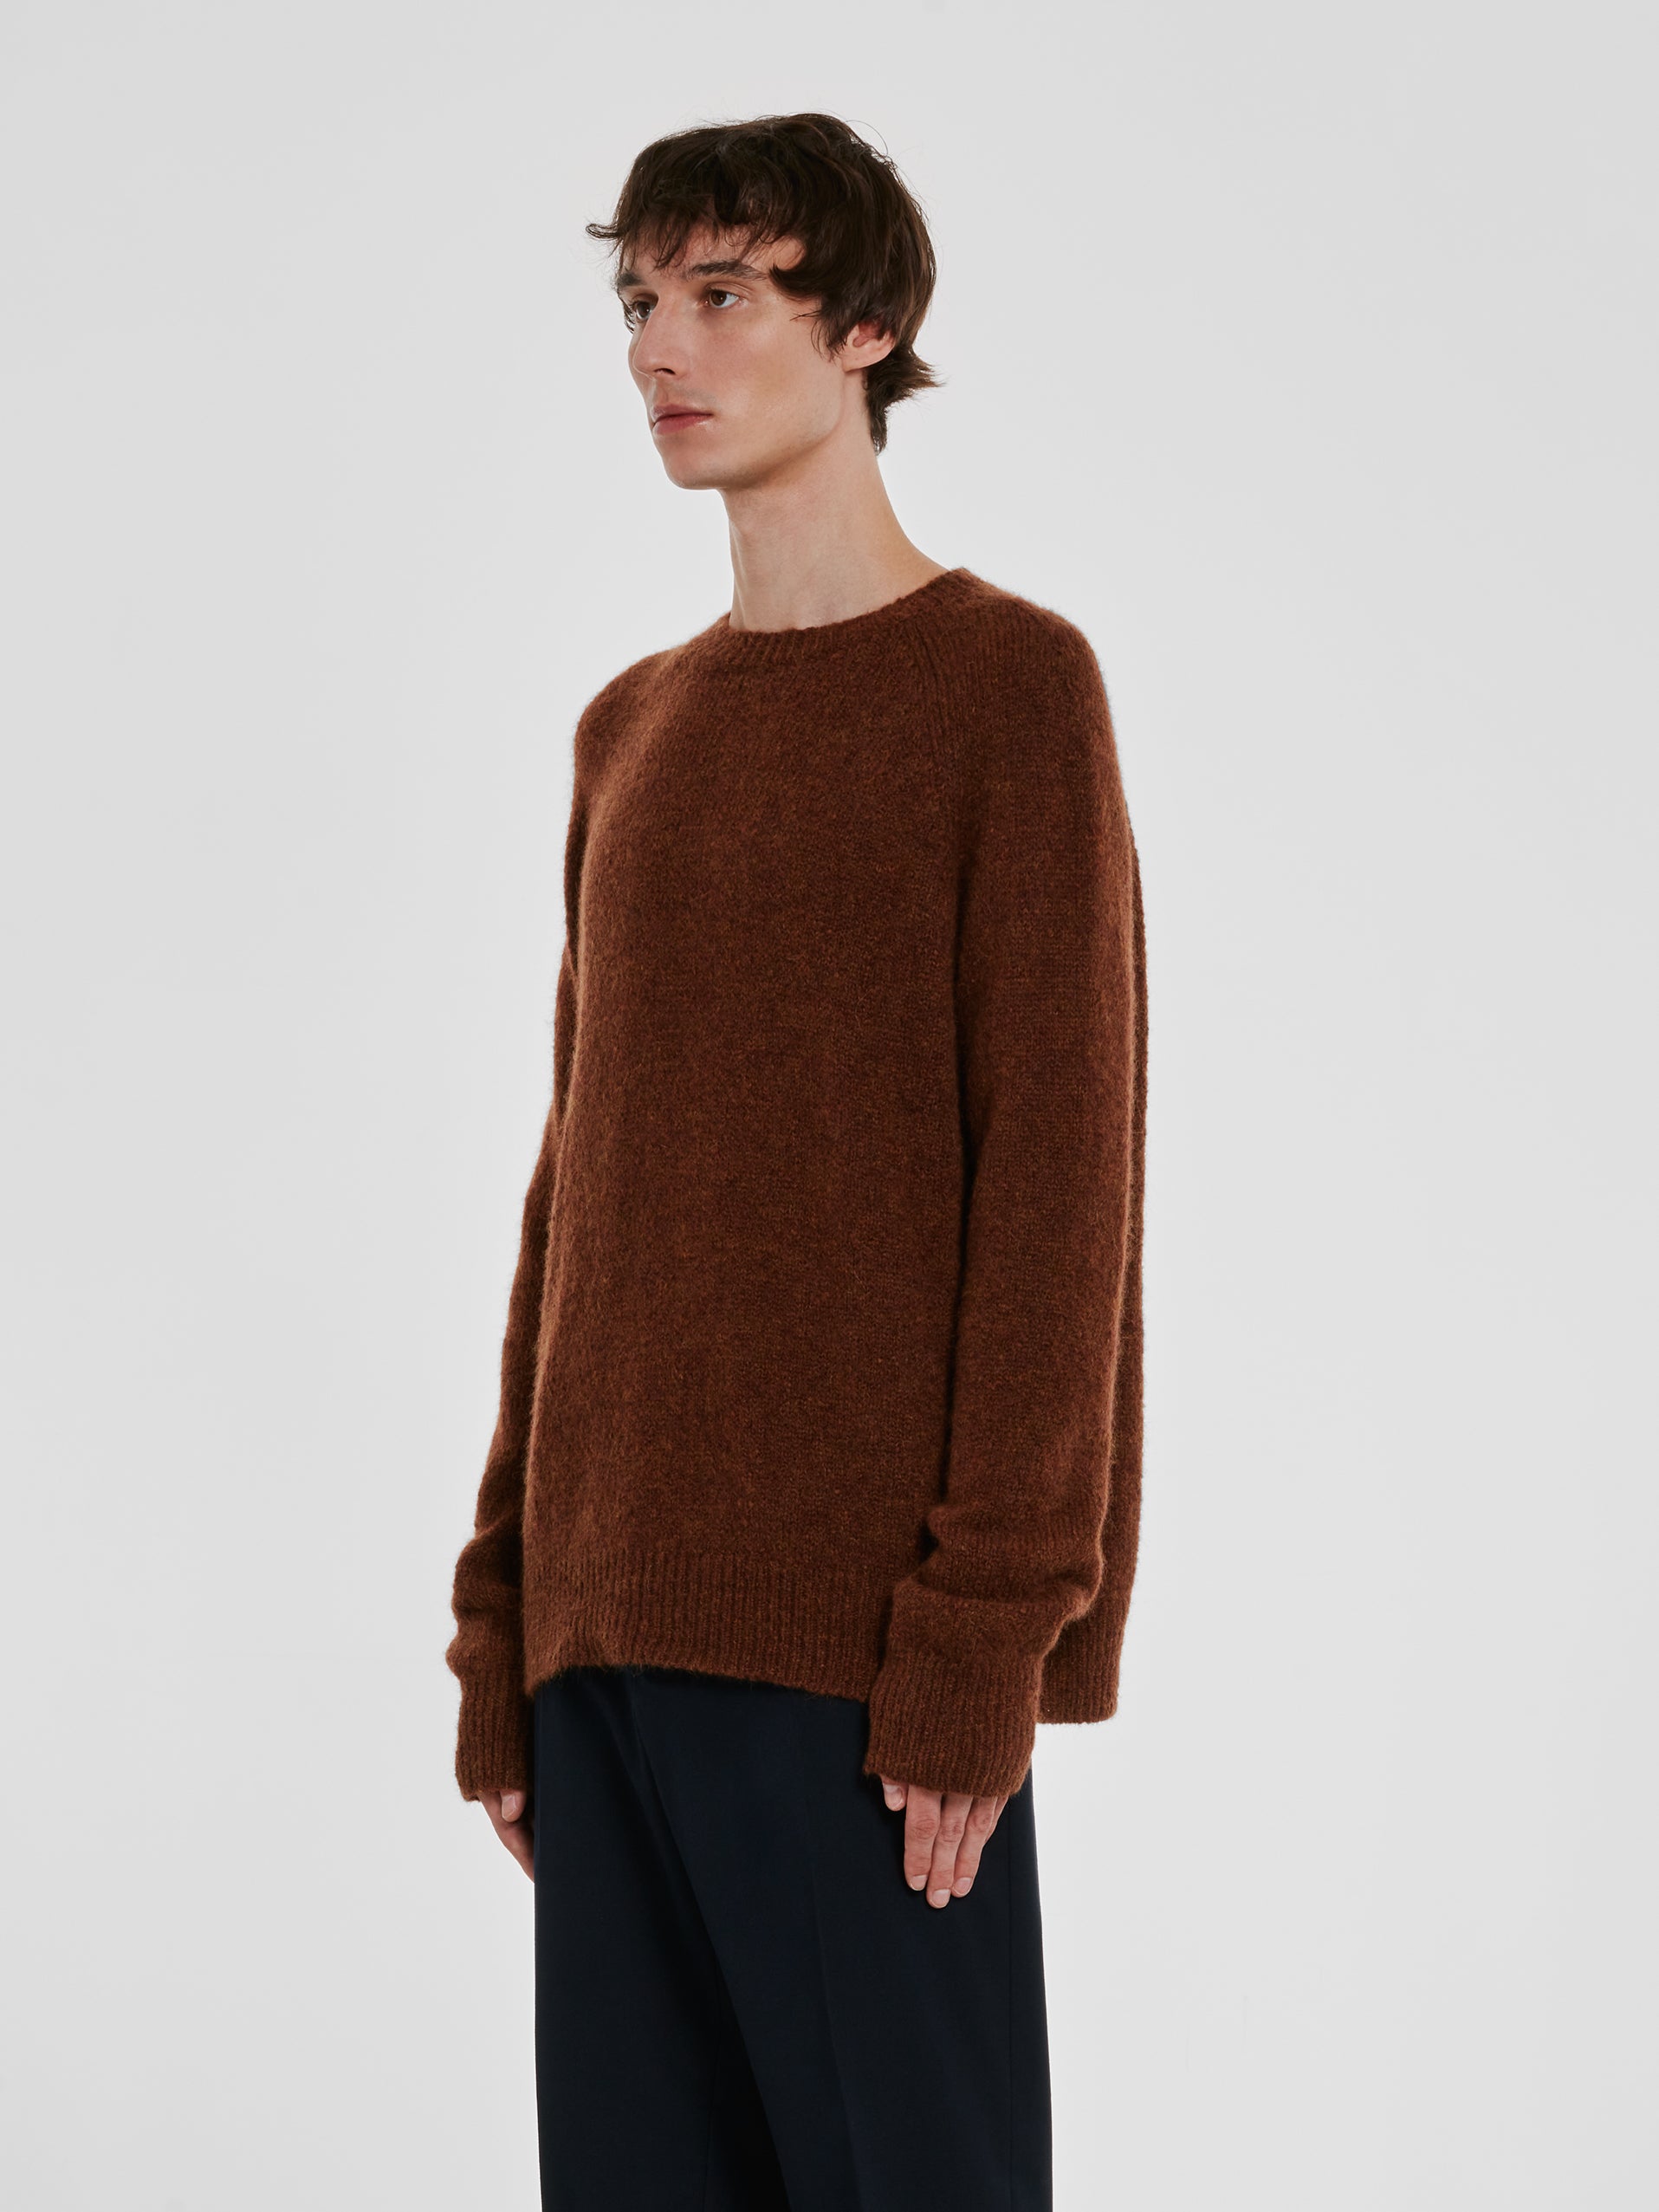 Dries Van Noten - Men’s Wool Sweater - (Brown) view 3